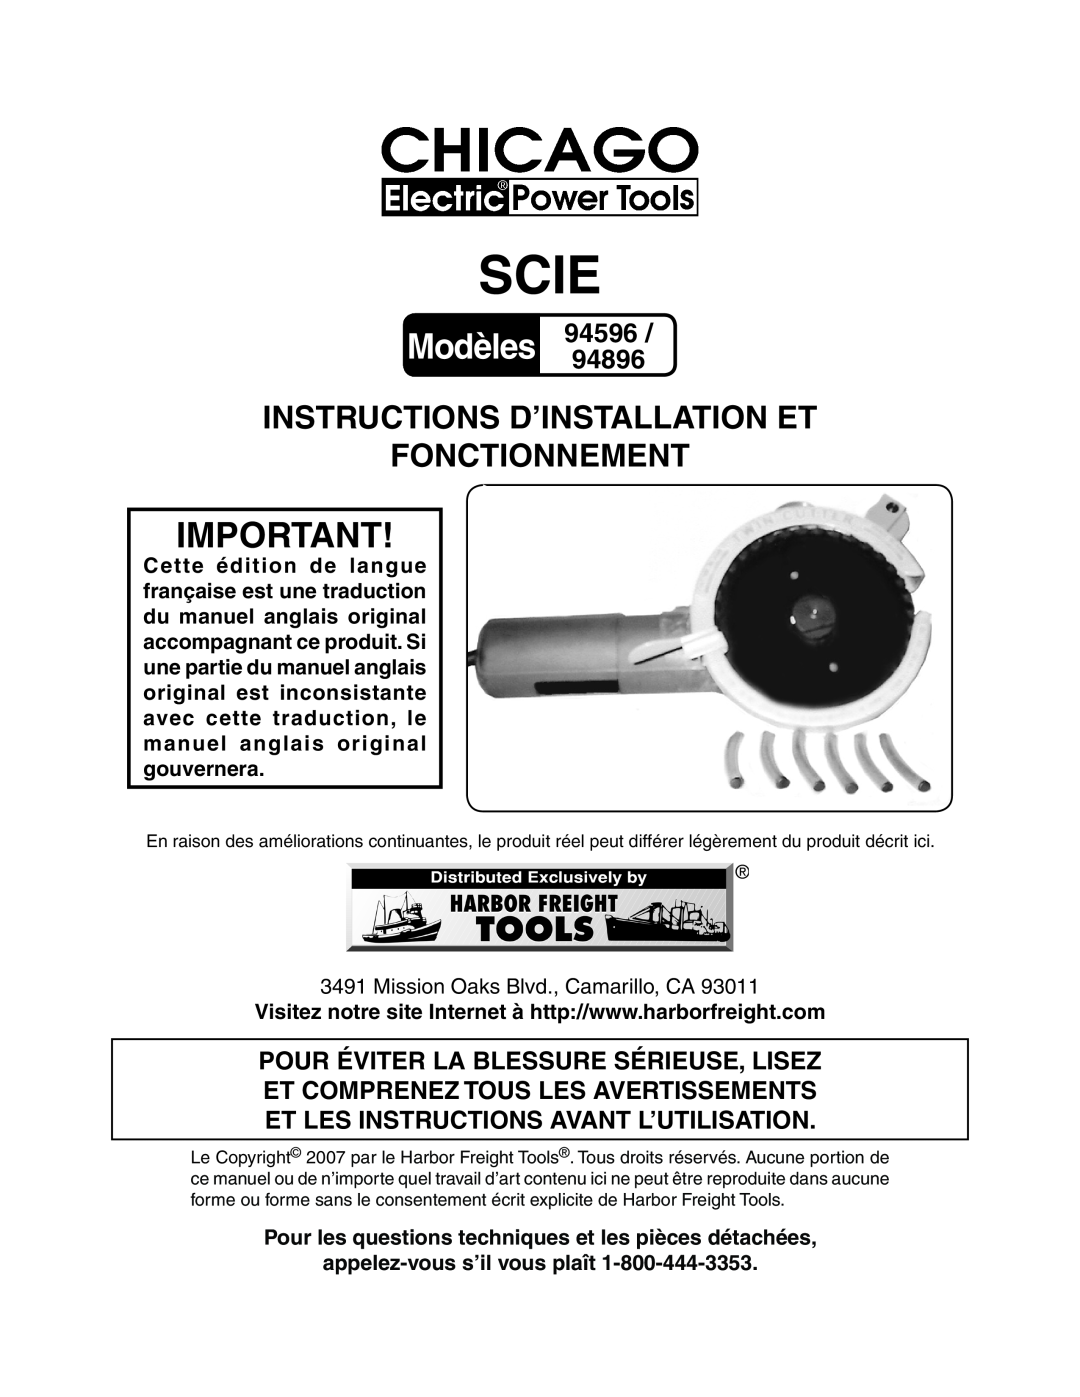 Chicago Electric 94596 manual Scie, Instructions D’Installation Et Fonctionnement, appelez-vous s’il vous plaît, Modèles 